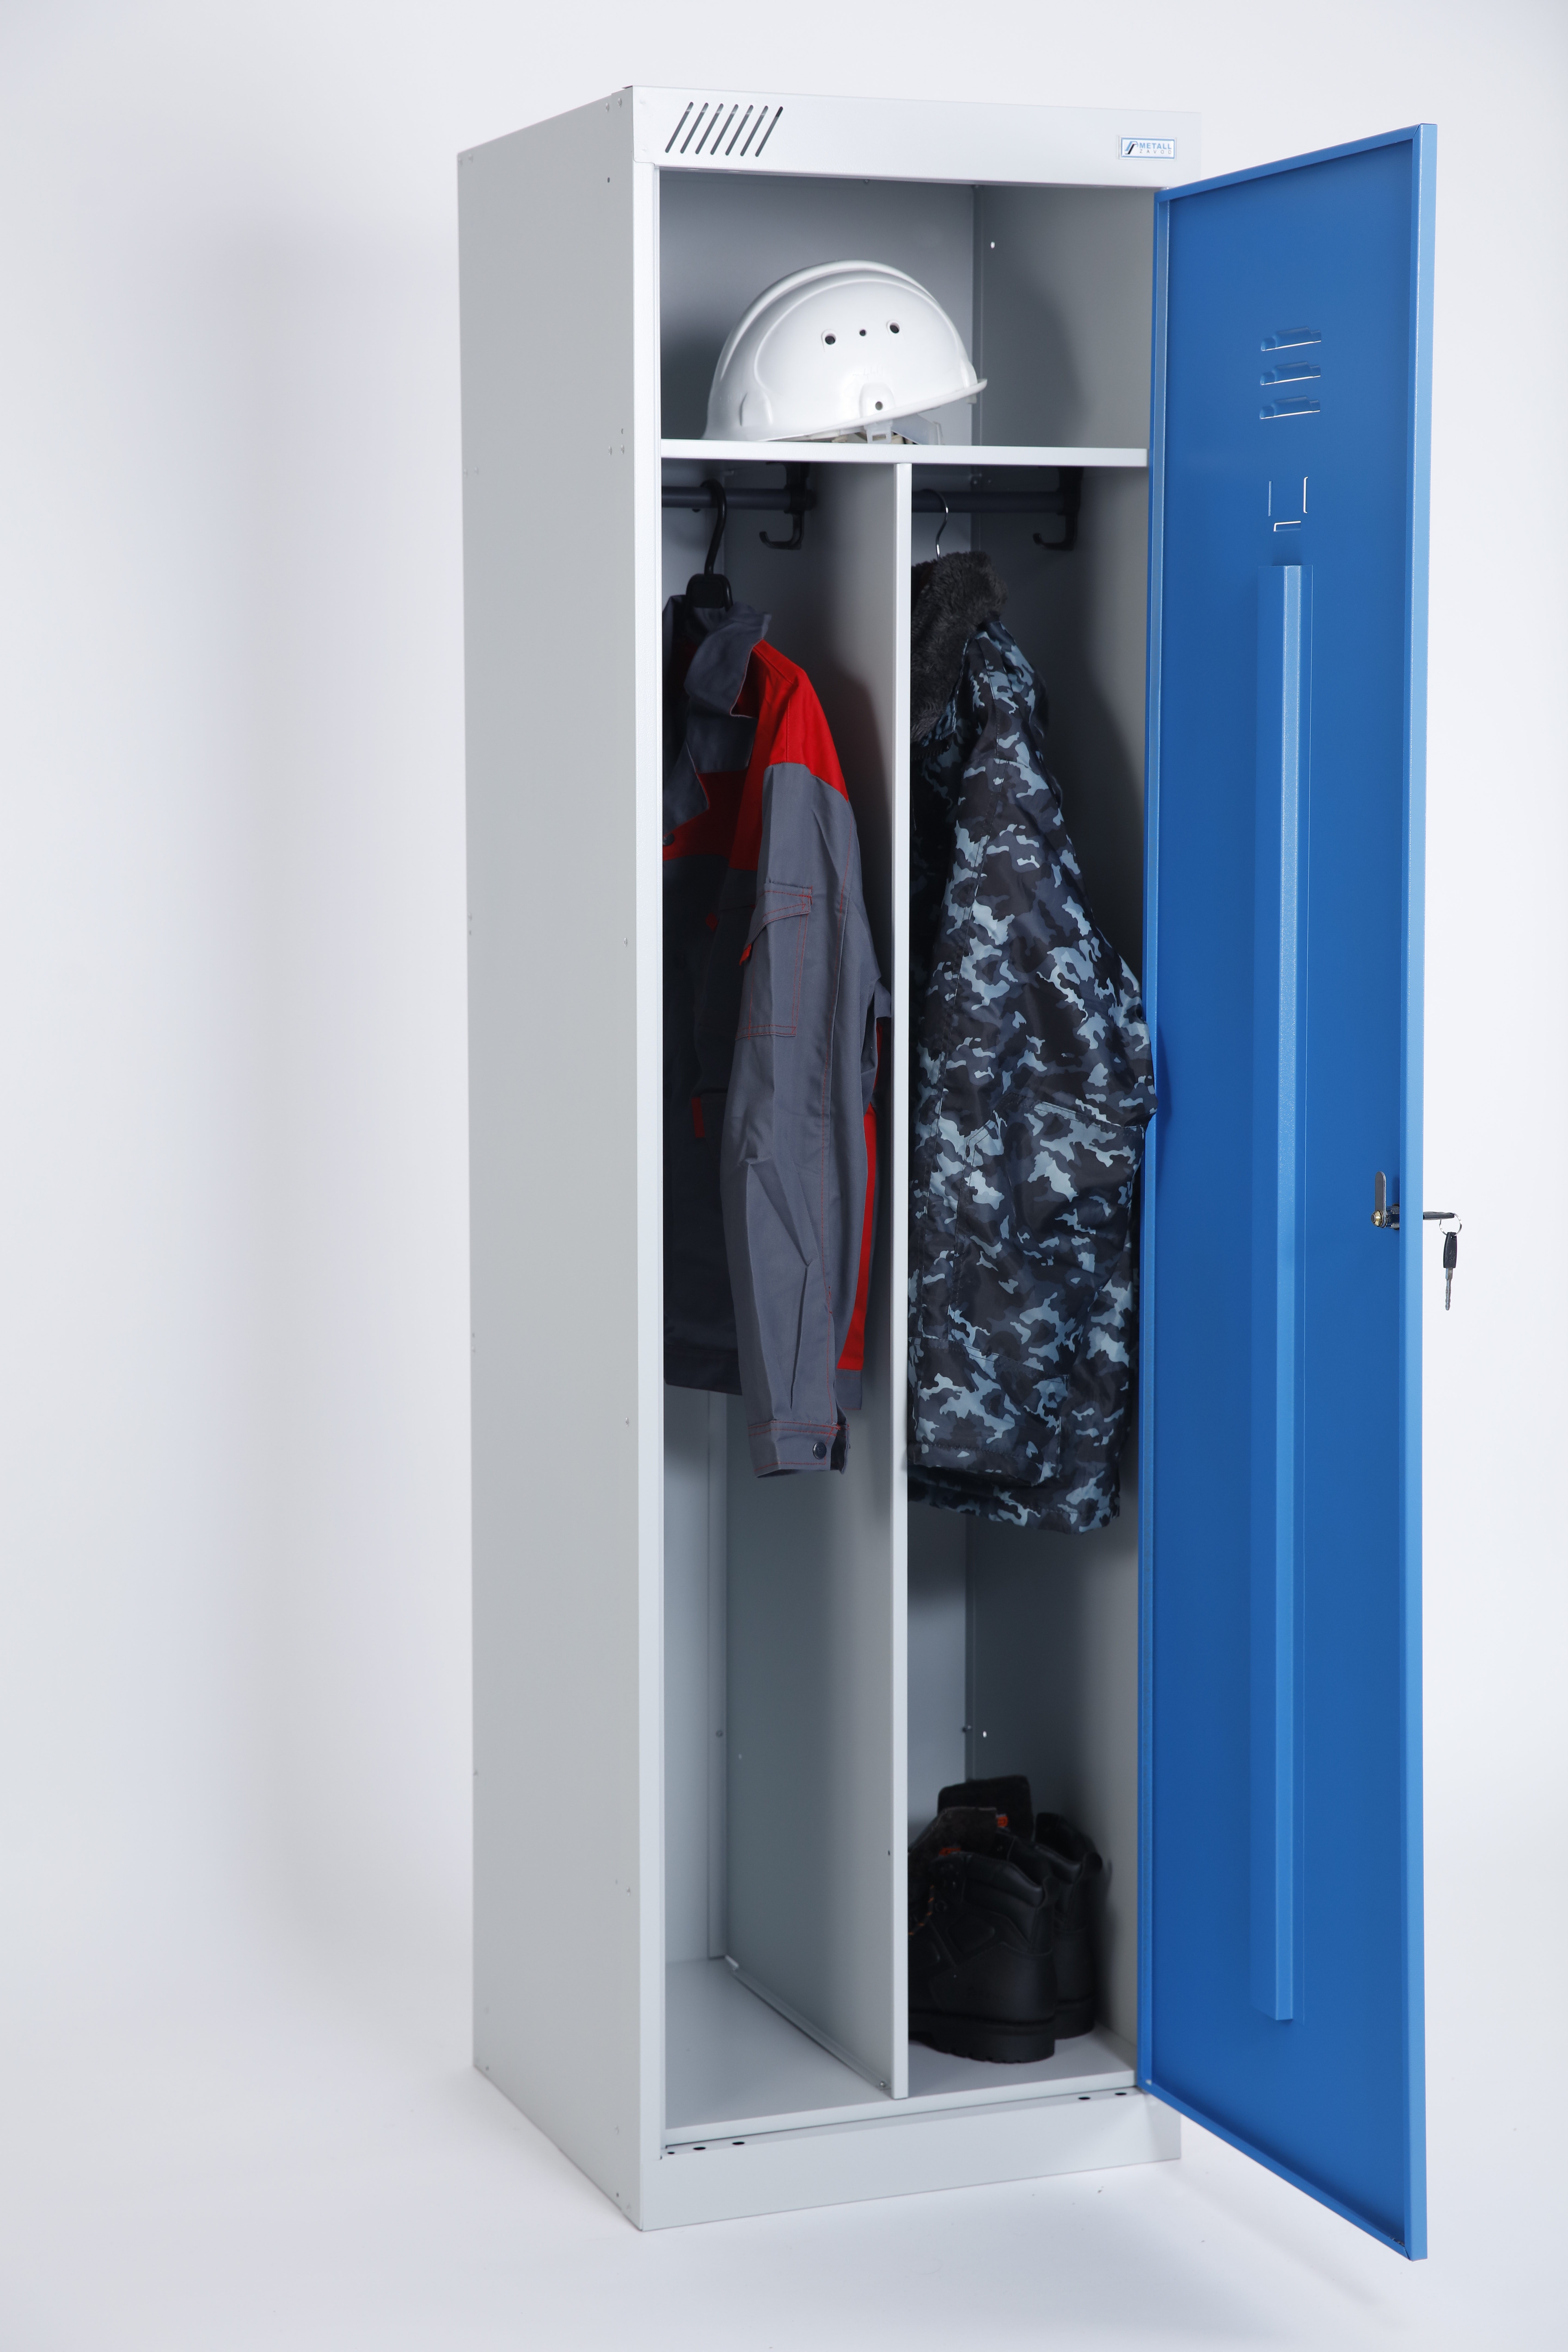 металлический шкаф для хранения одежды и инвентаря шрм ак у